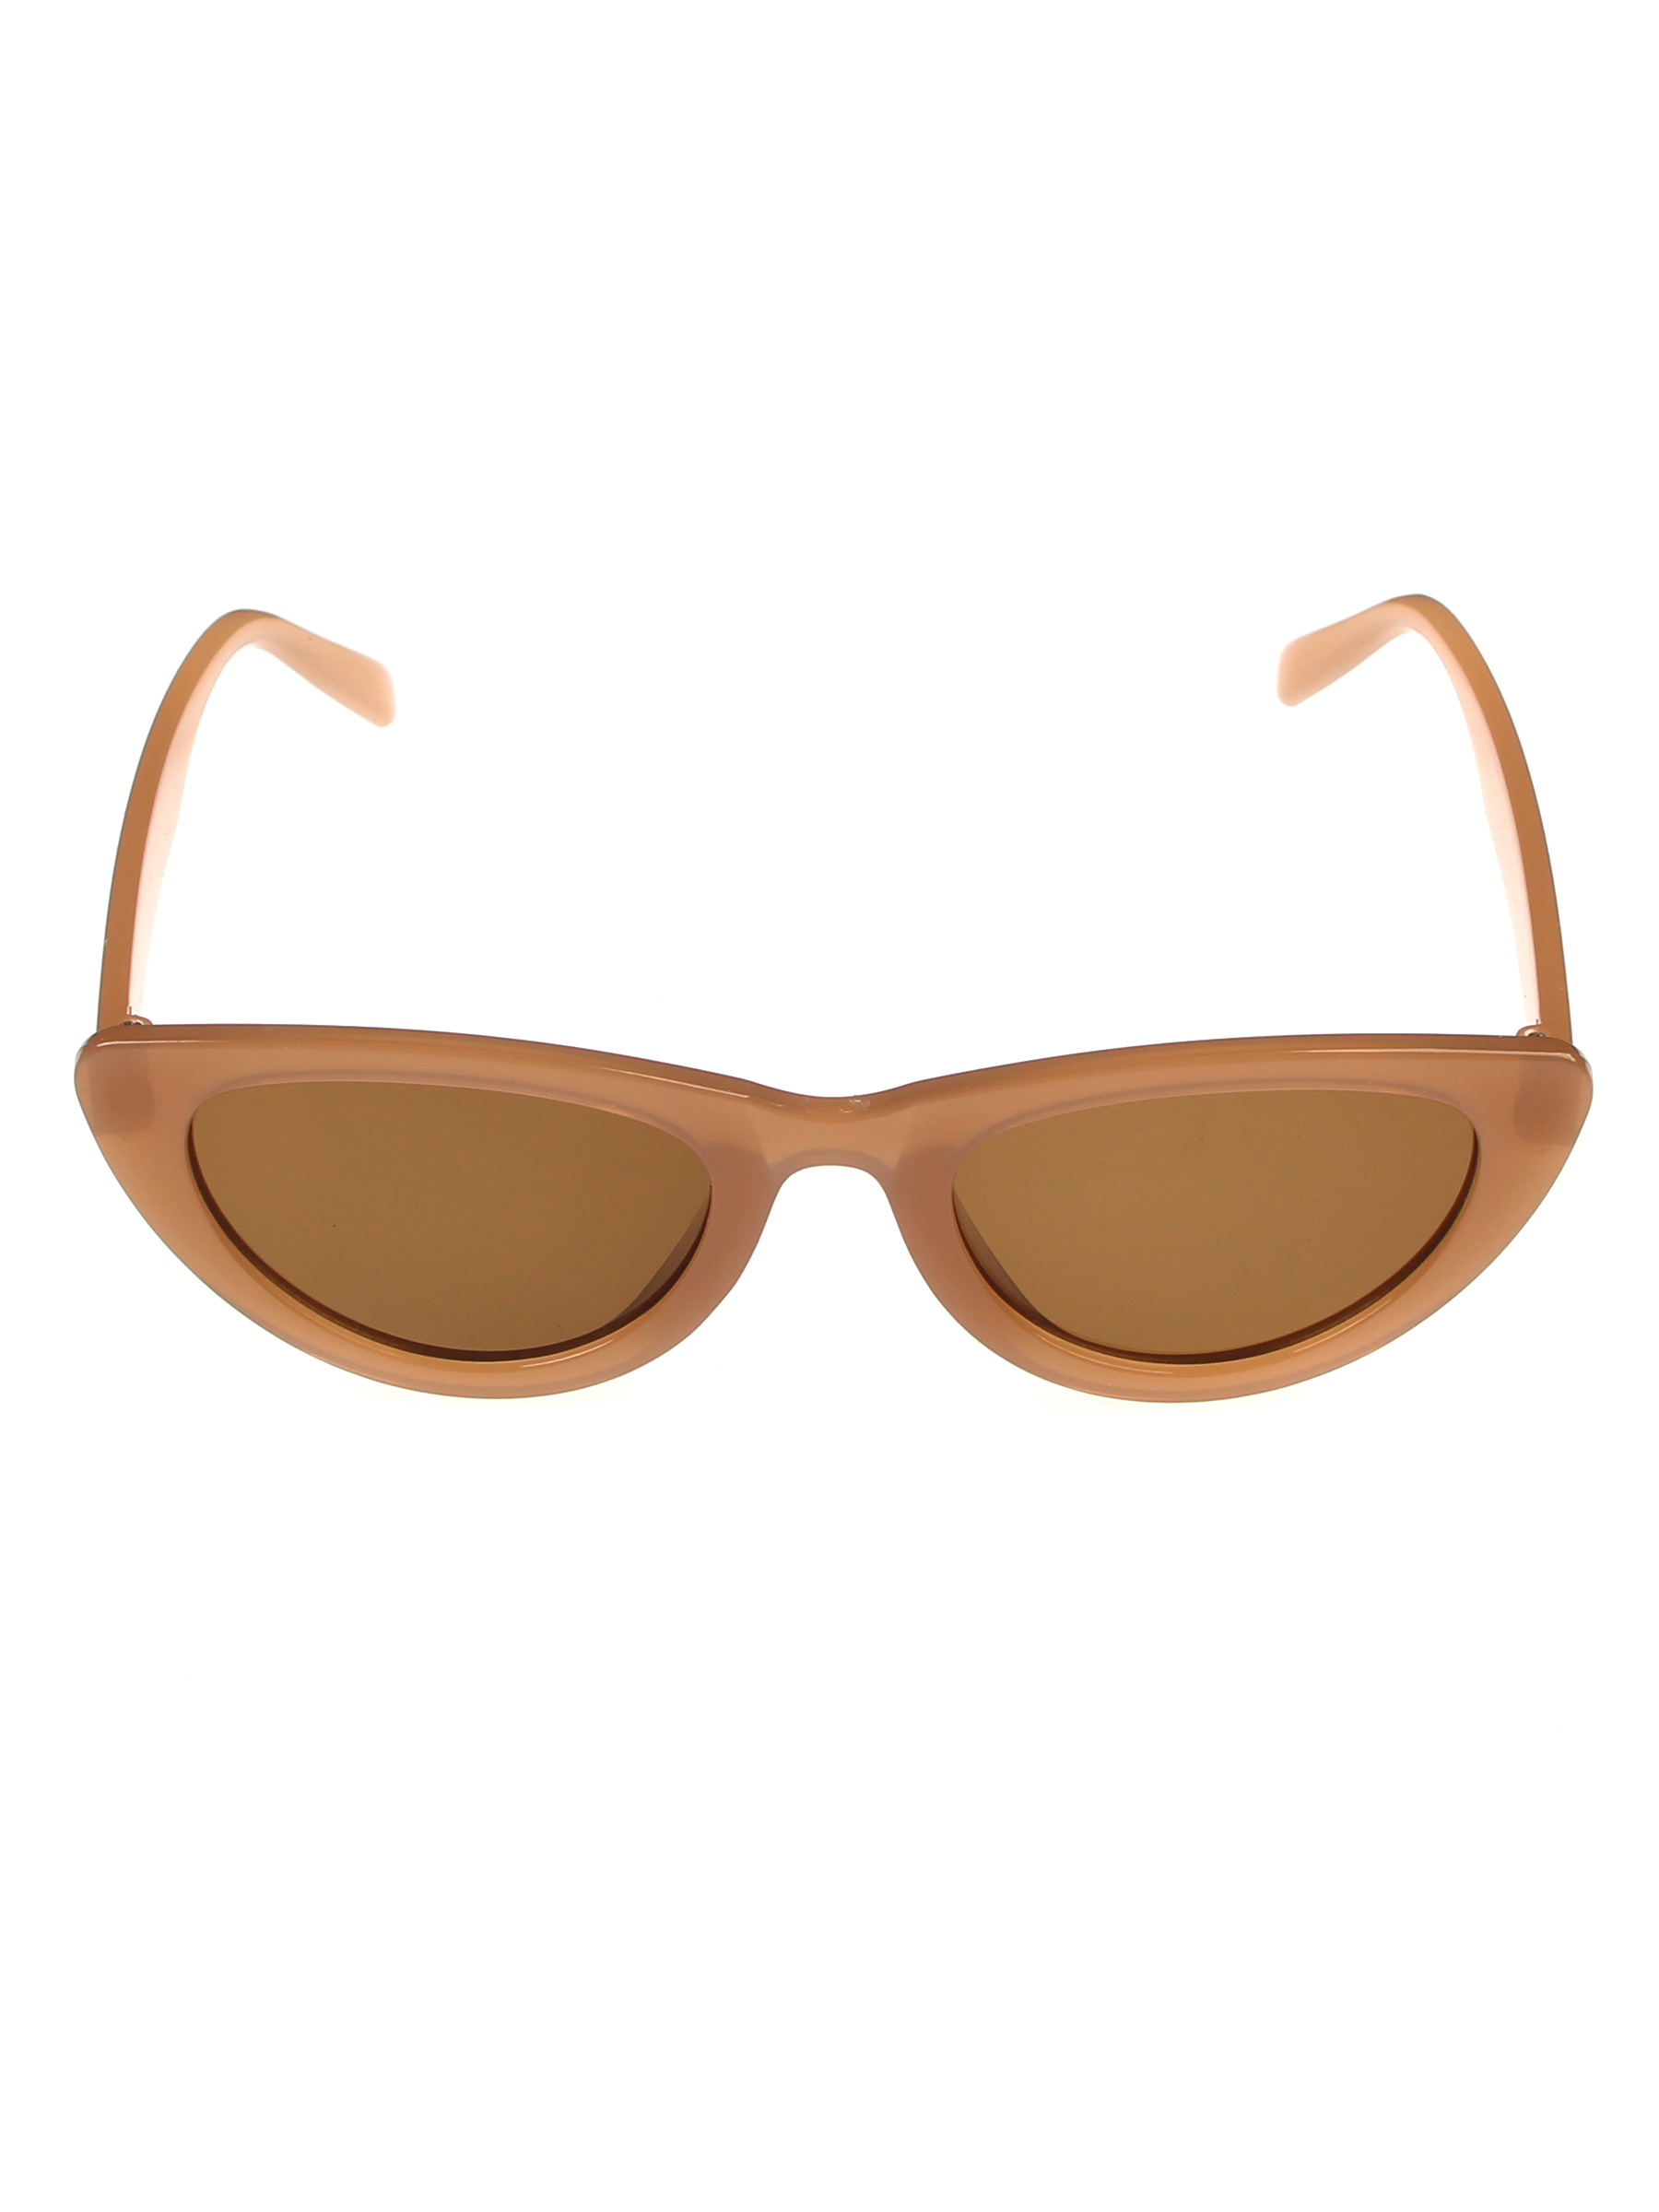 Солнцезащитные очки женские Pretty Mania NDP021 коричневые